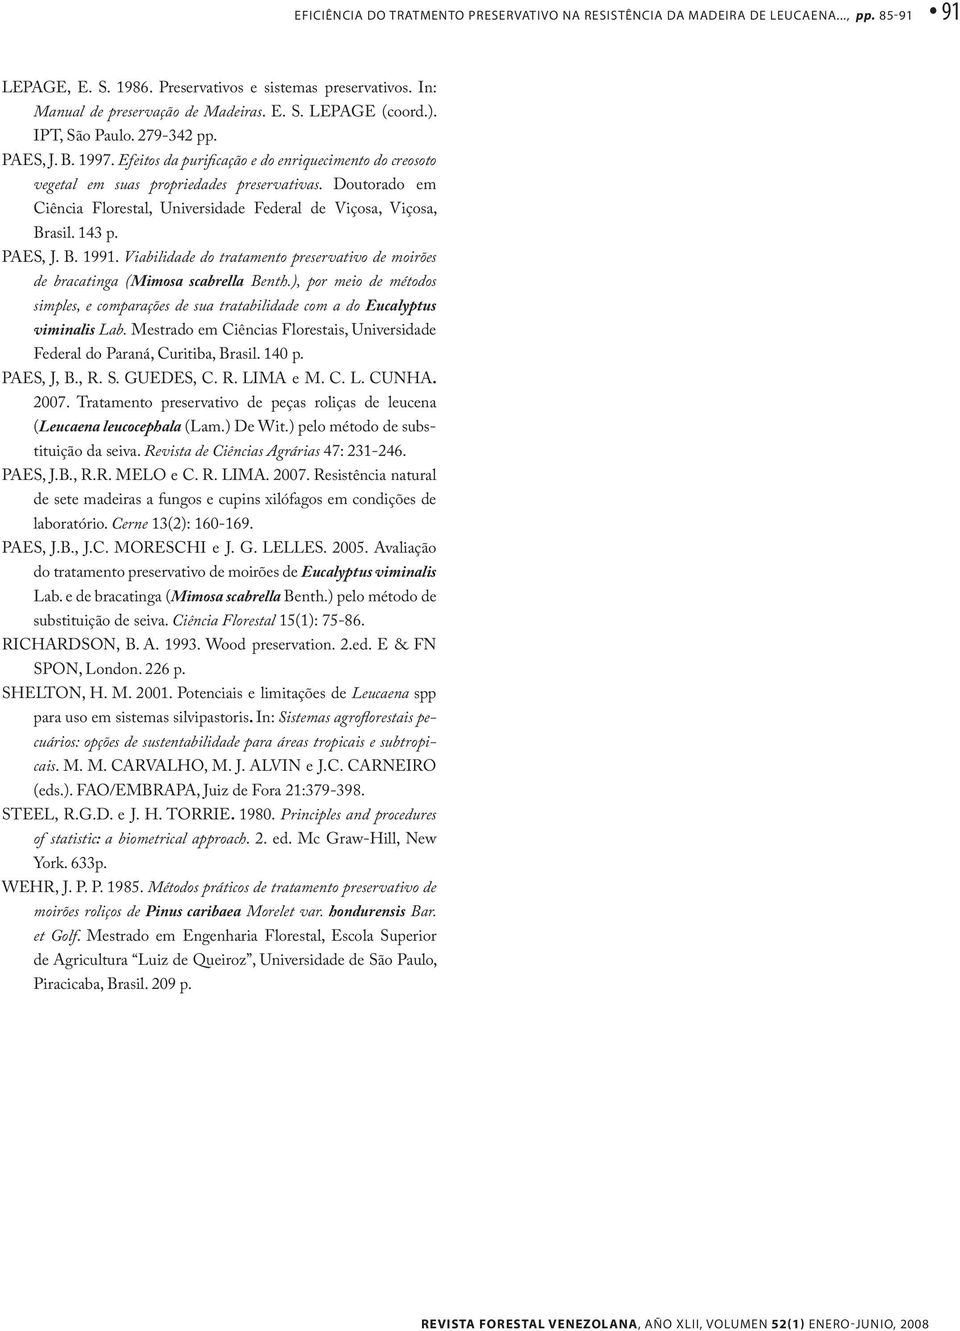 Doutorado em Ciência Florestal, Universidade Federal de Viçosa, Viçosa, Brasil. 143 p. PAES, J. B. 1991. Viabilidade do tratamento preservativo de moirões de bracatinga (Mimosa scabrella Benth.